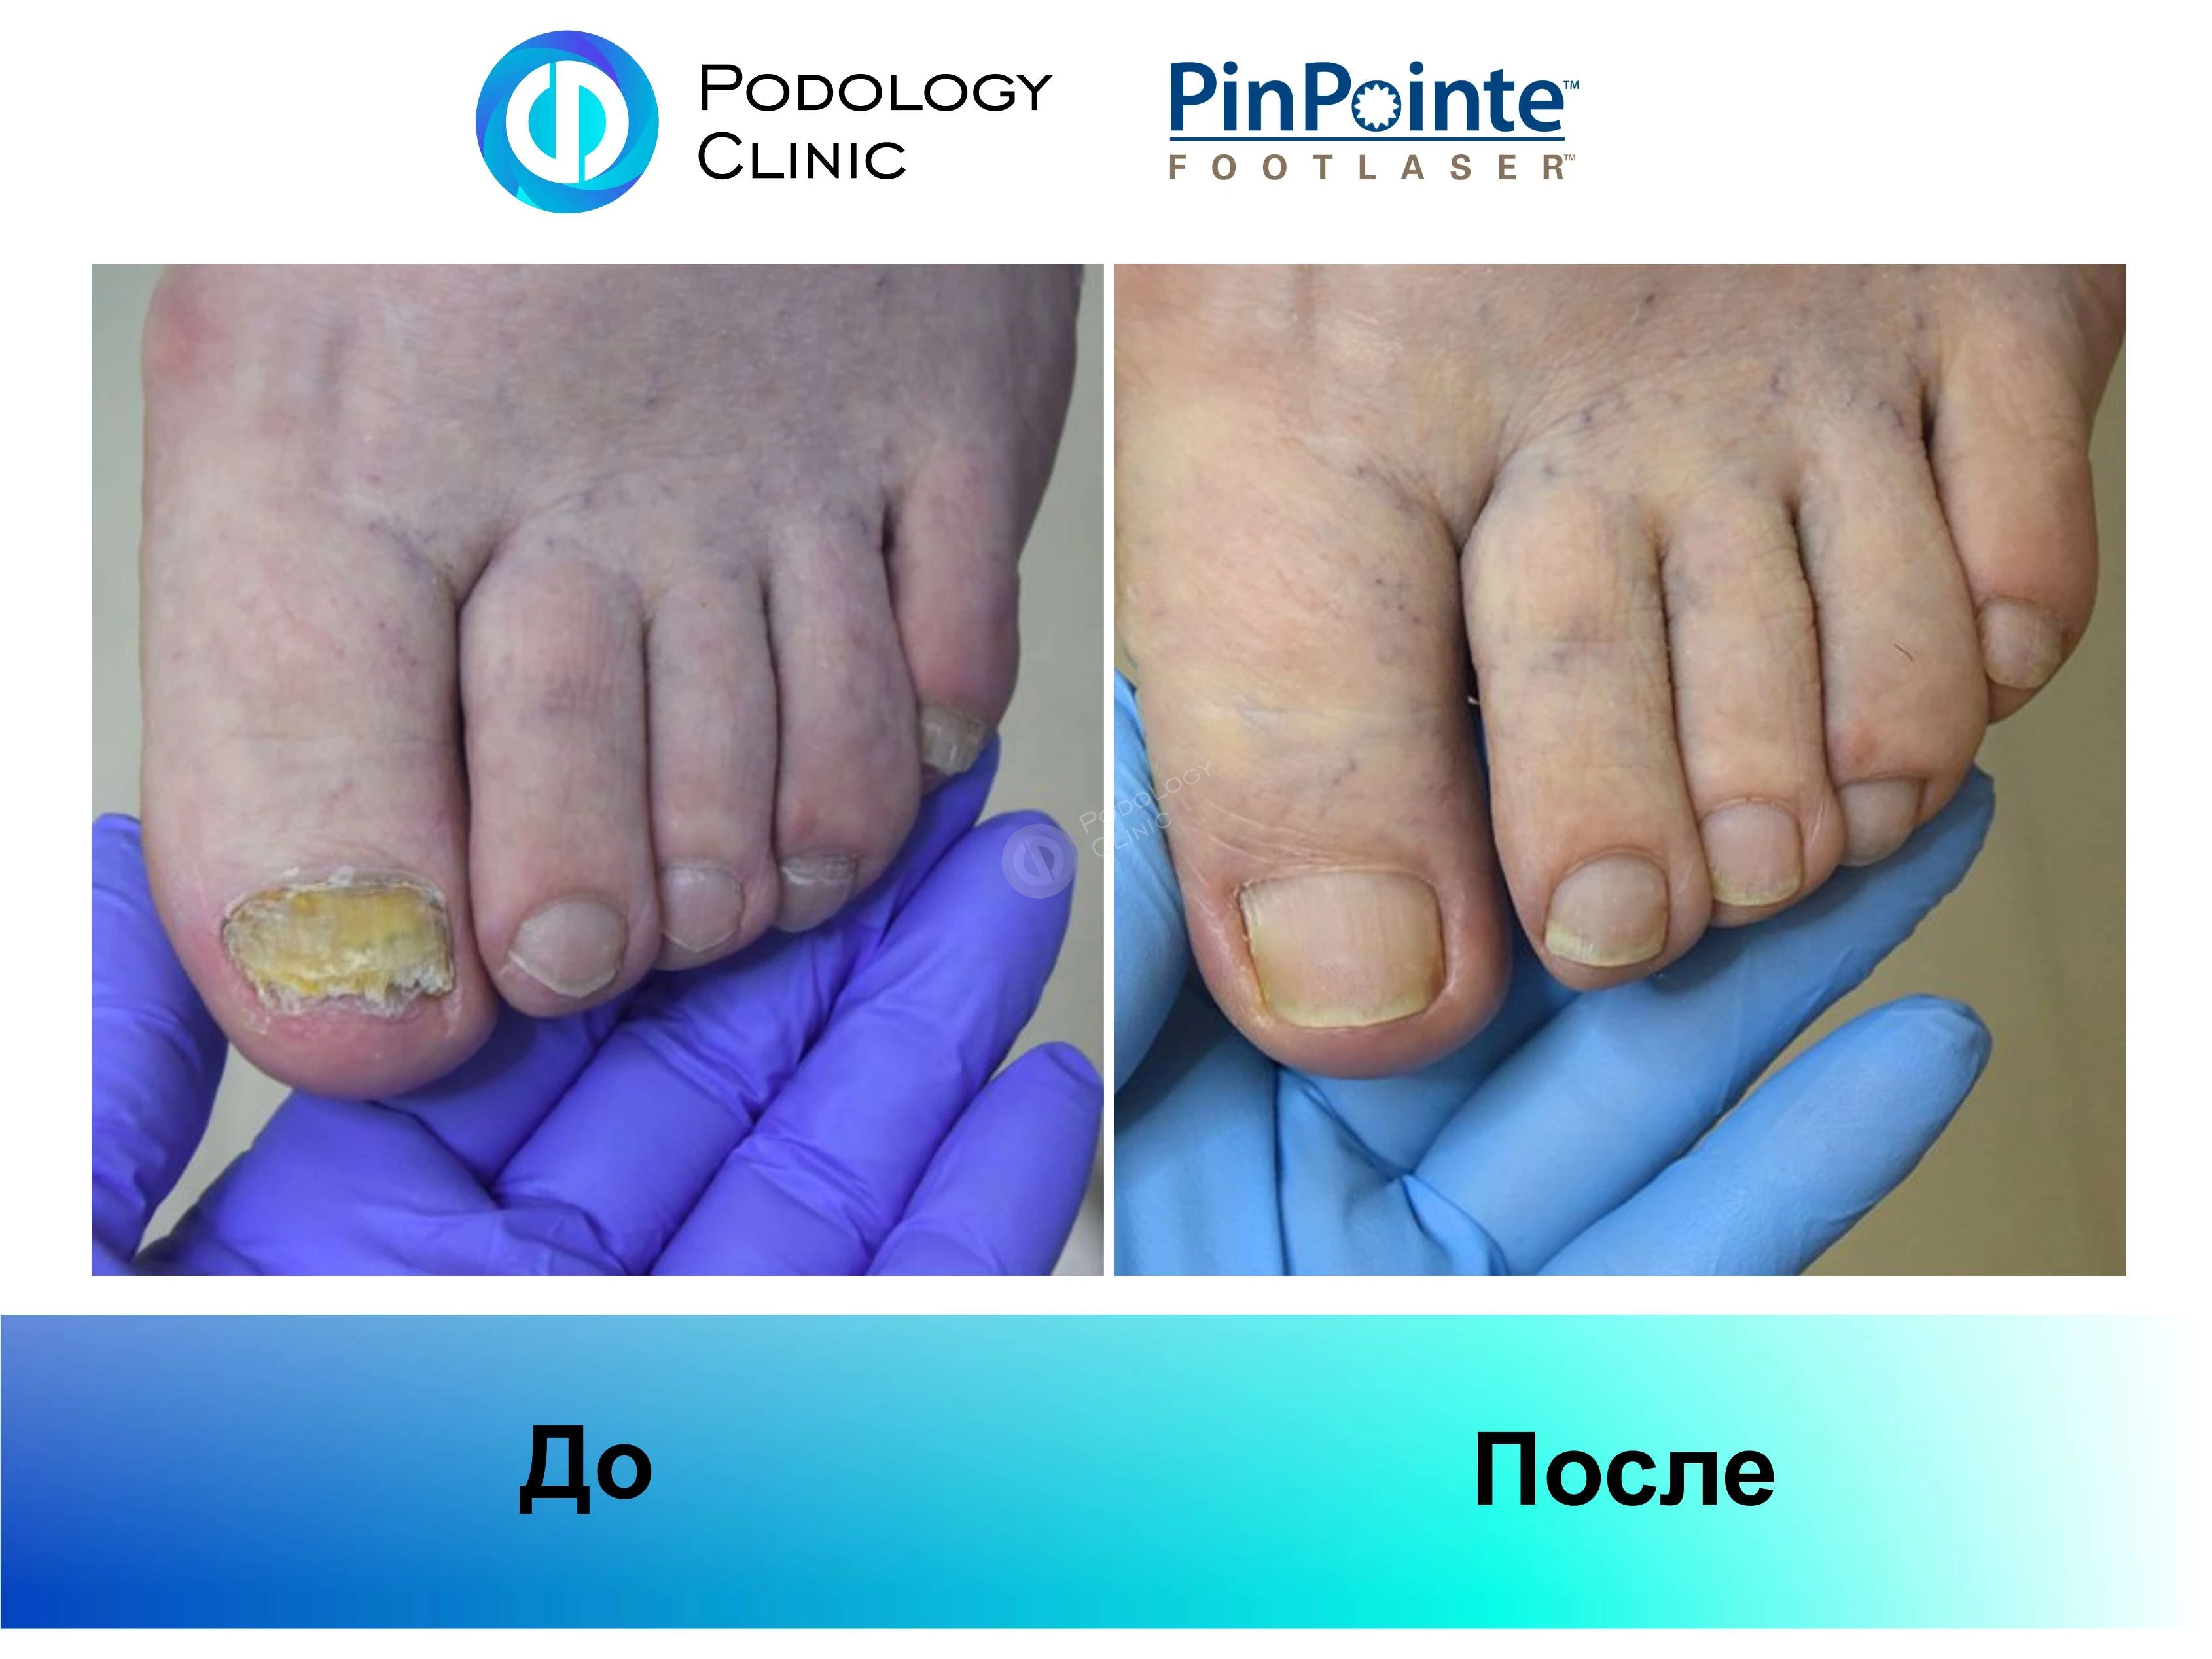 Примеры работы лазера PinPointe FootLaser в лечении онихомикоза, фото 7